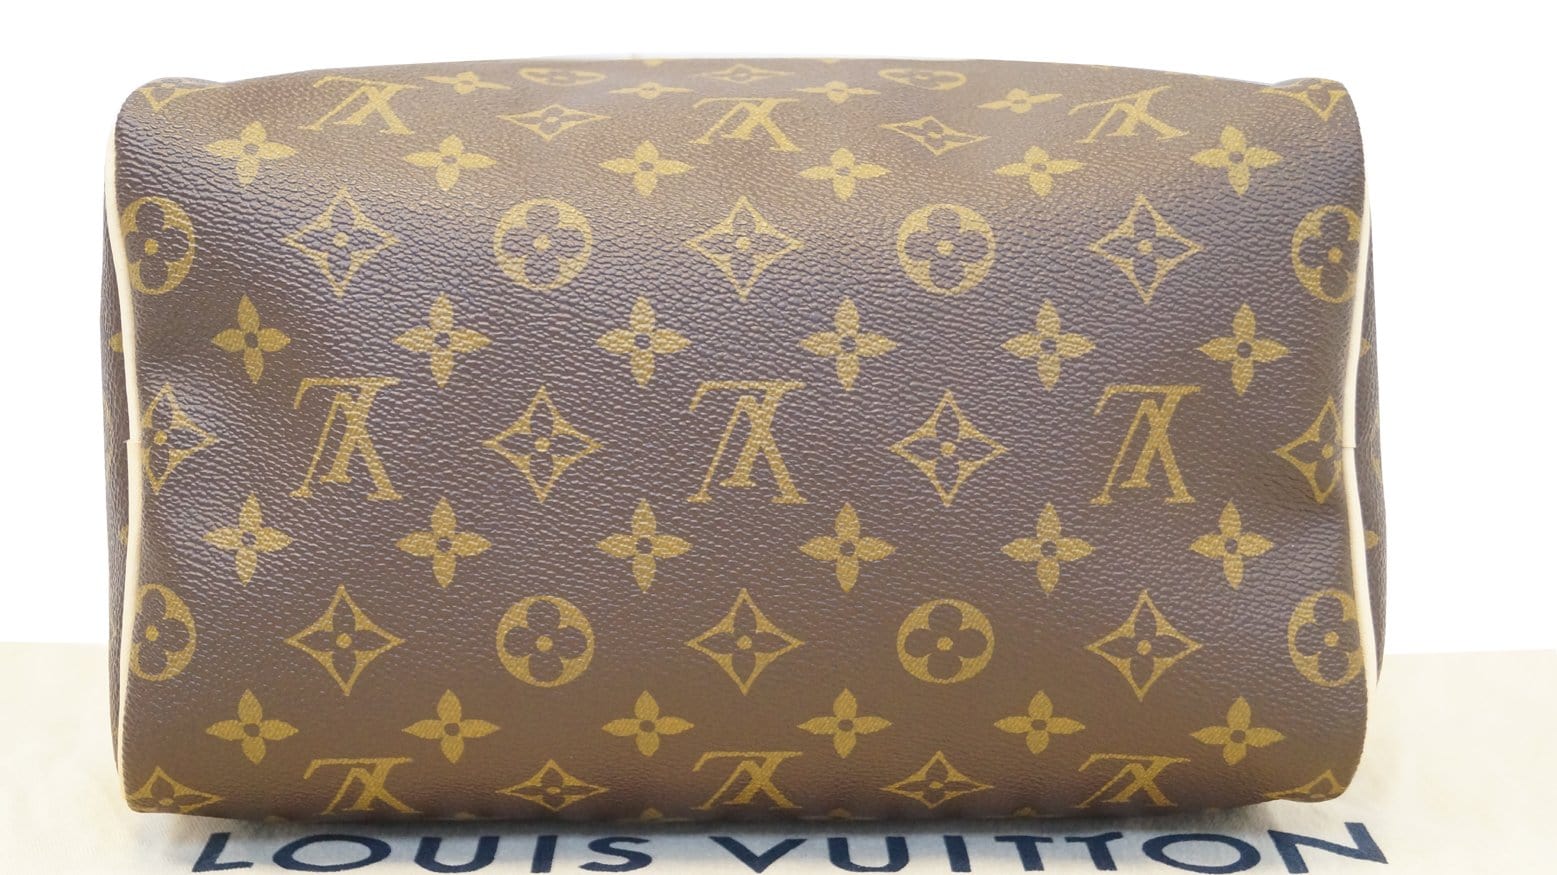 Louis Vuitton SPEEDY 25 Monogram Canvas with date Code M54177